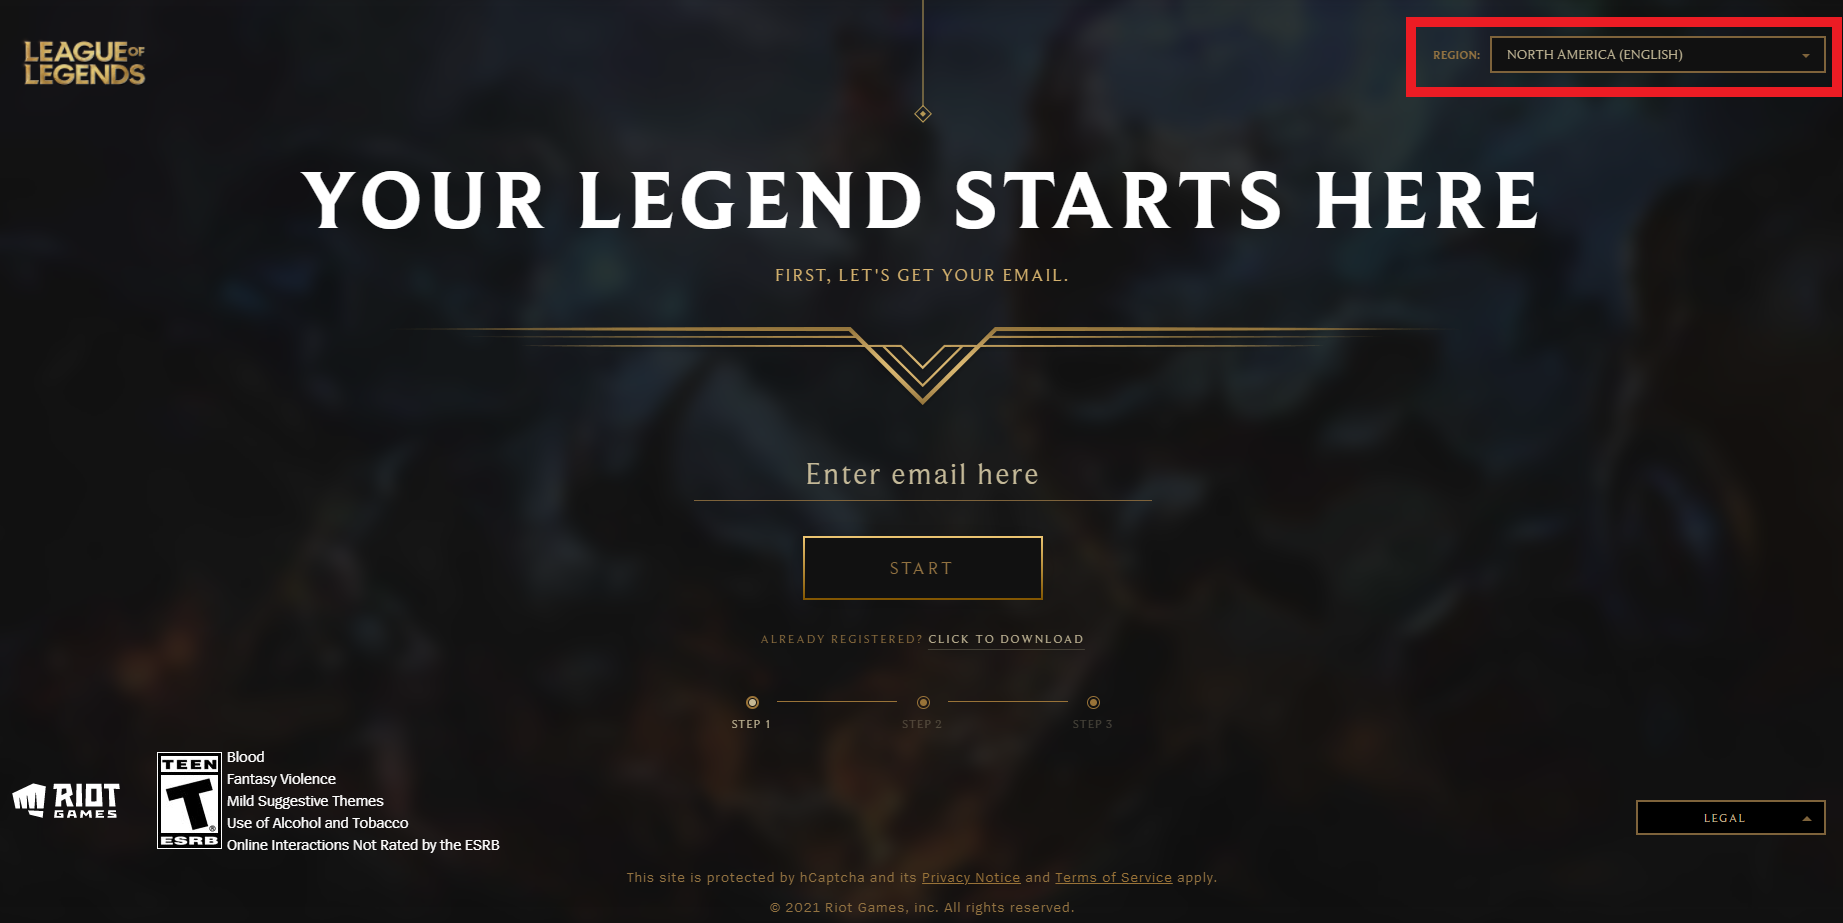 Strona rejestracji do League of Legends, twoja legenda zaczyna się tutaj